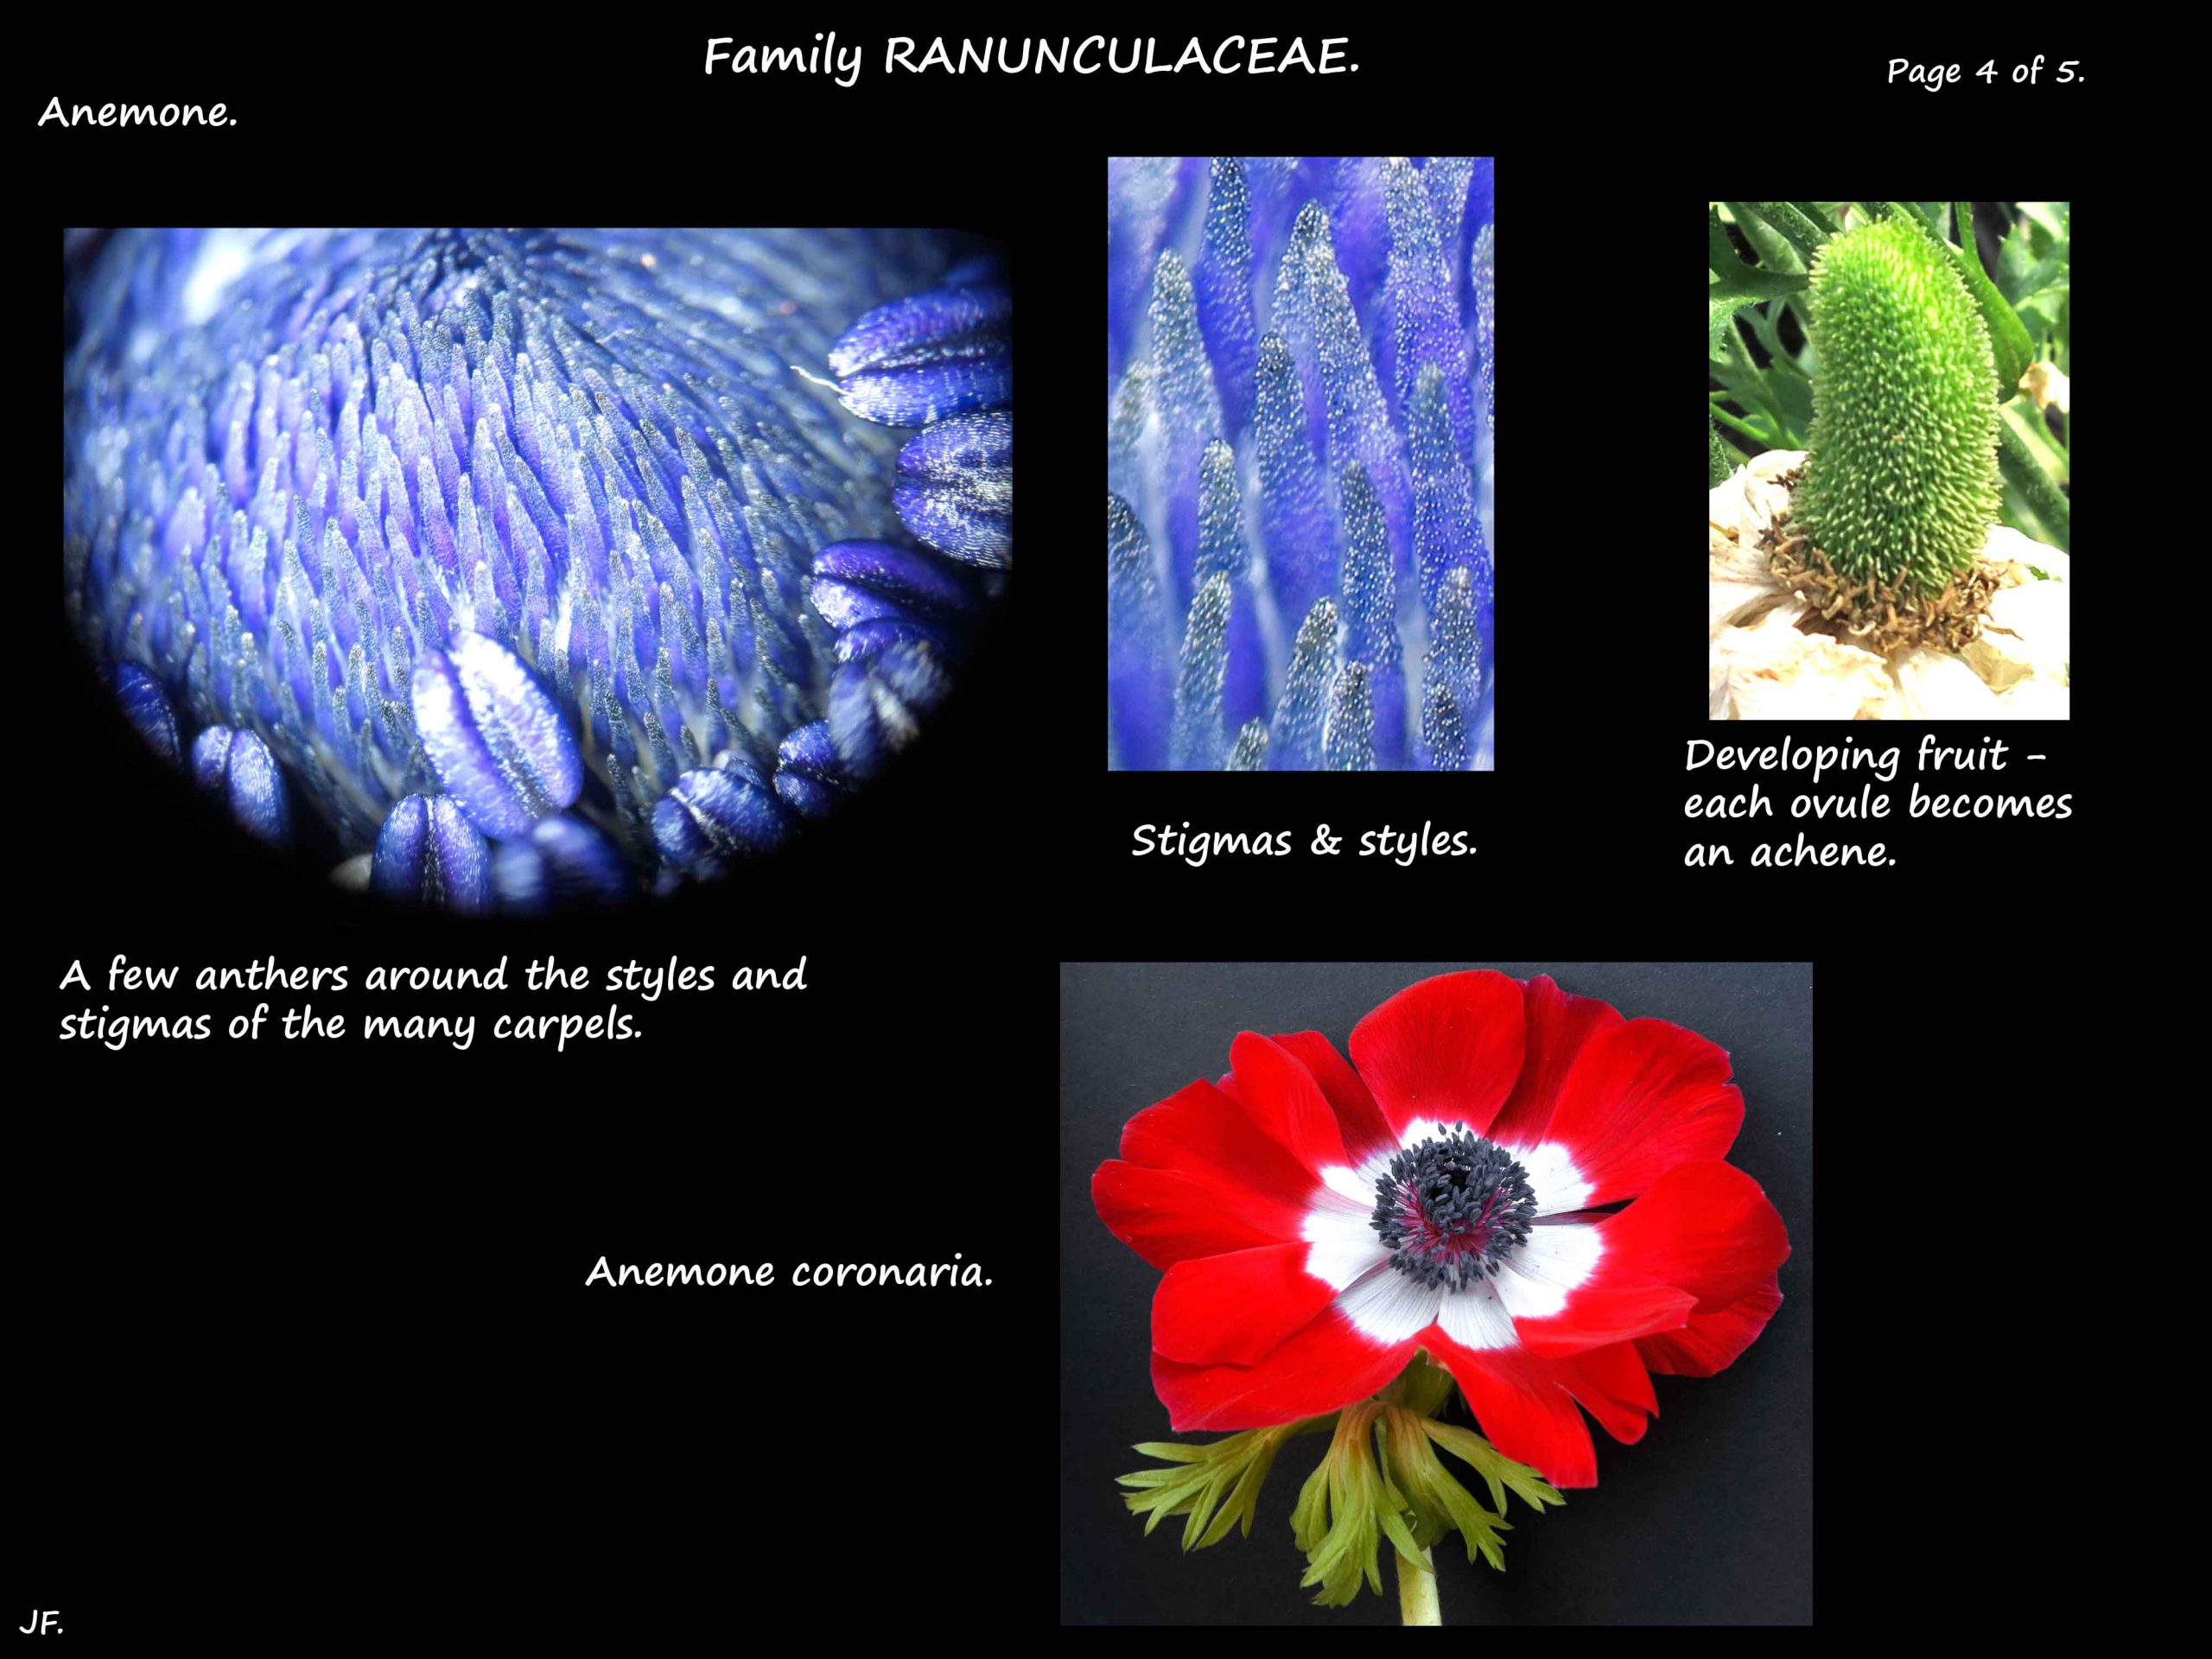 4 Anemone coronaria anthers & stigmas